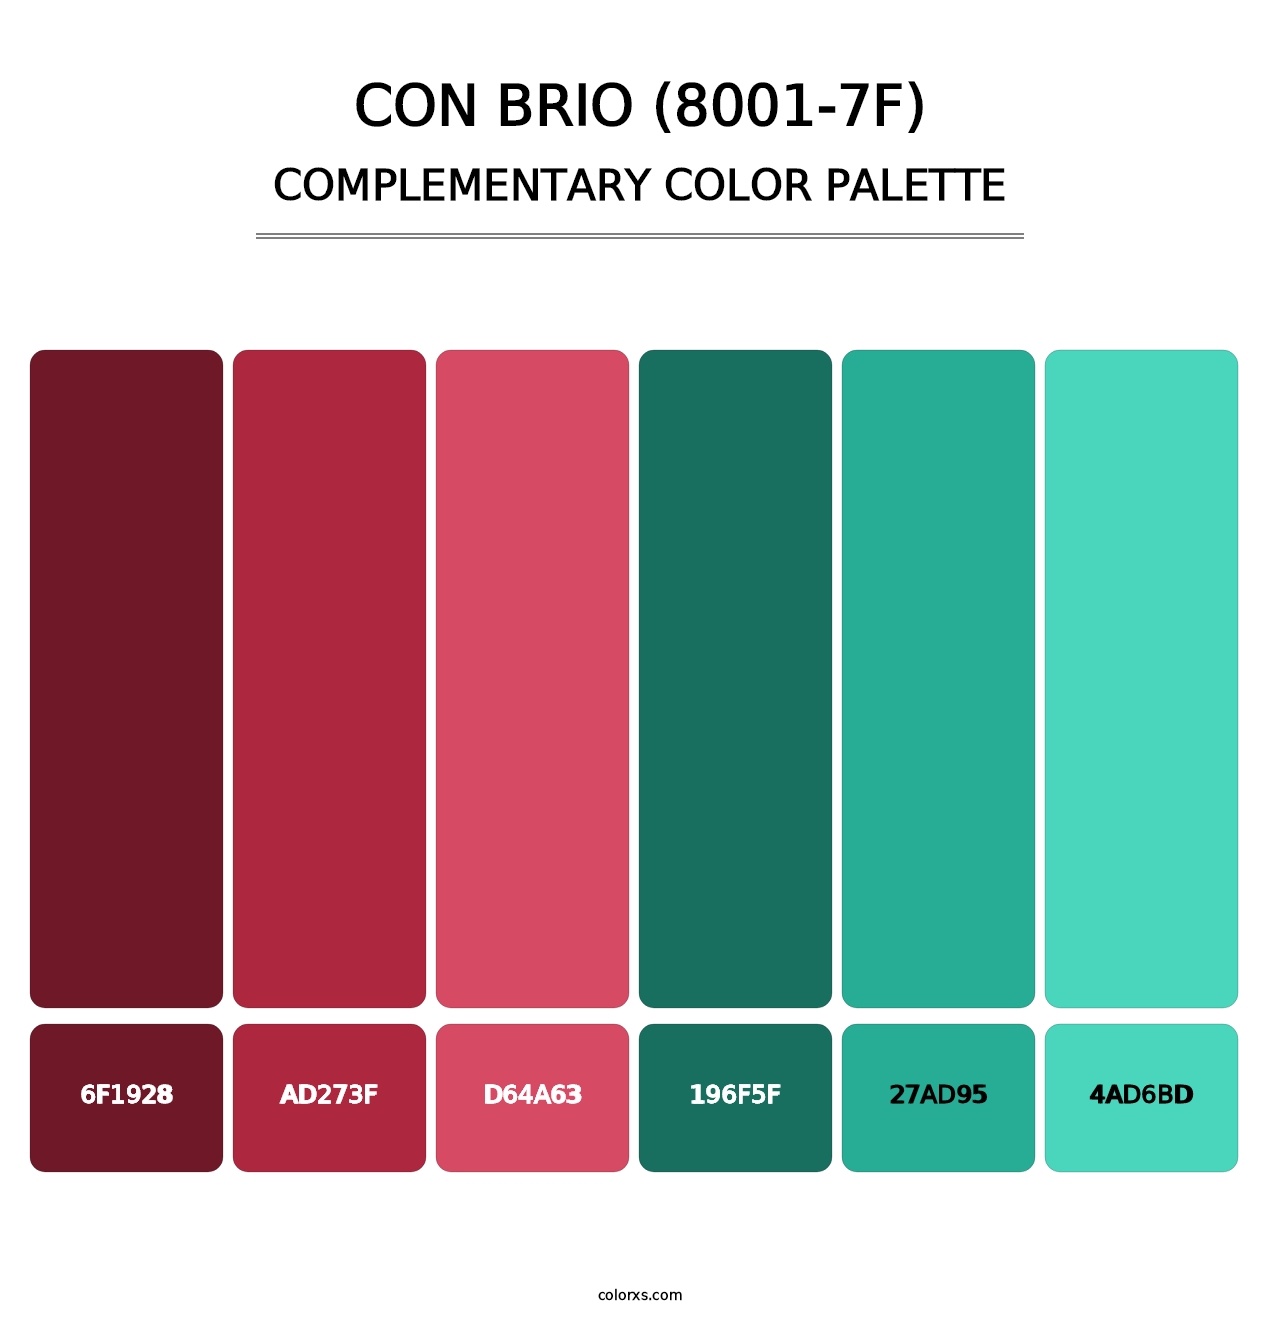 Con Brio (8001-7F) - Complementary Color Palette